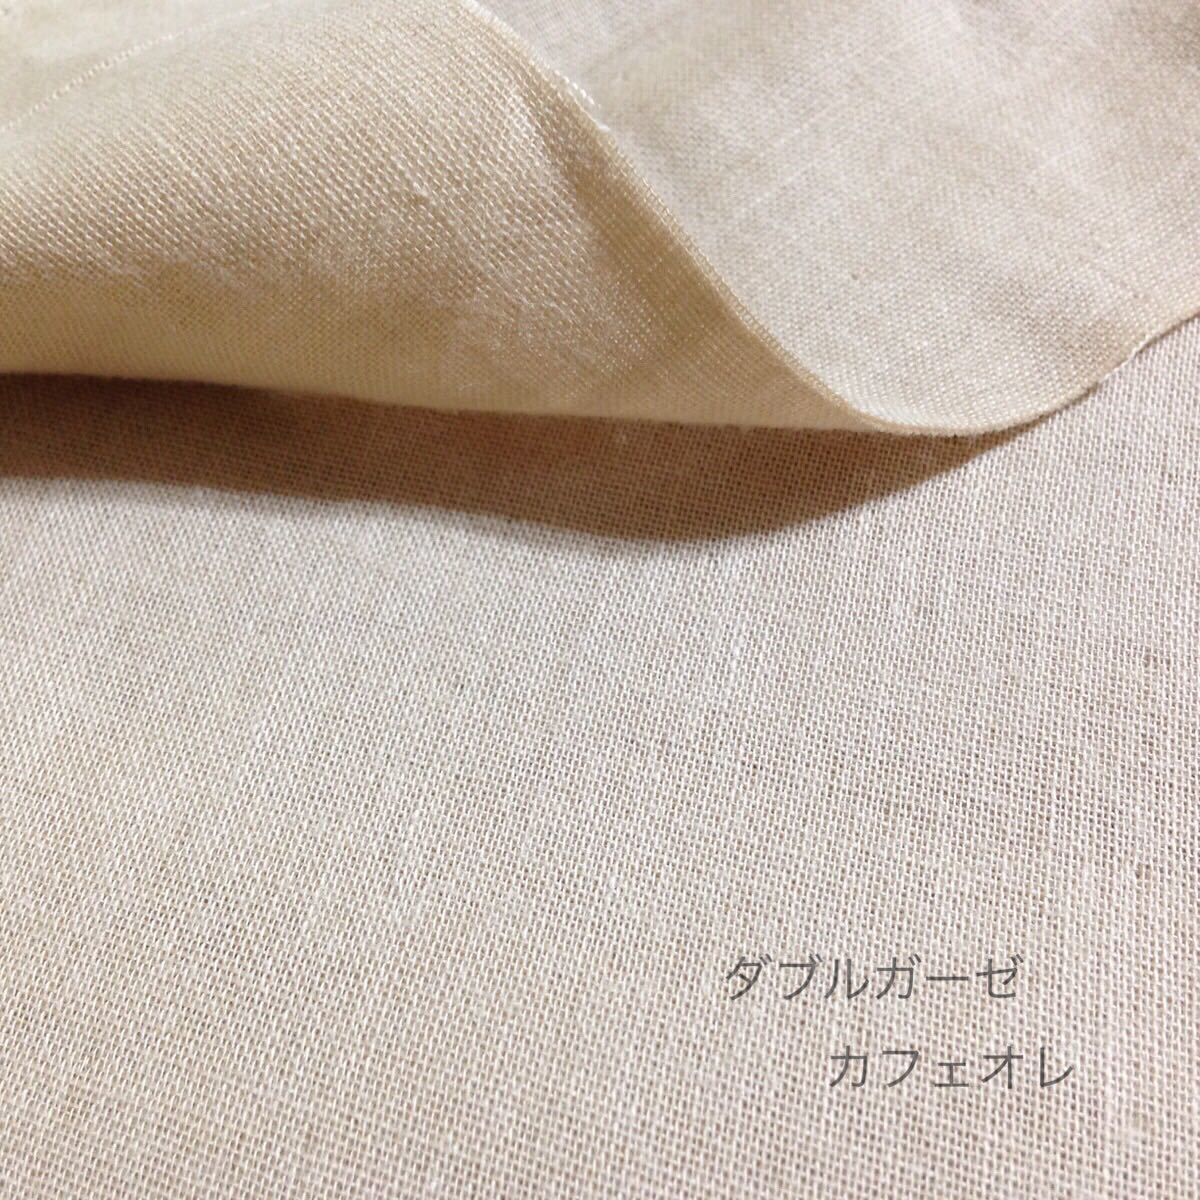 【ダブルガーゼ カフェオレ】防水7層布ナプキン 3枚セット_画像6